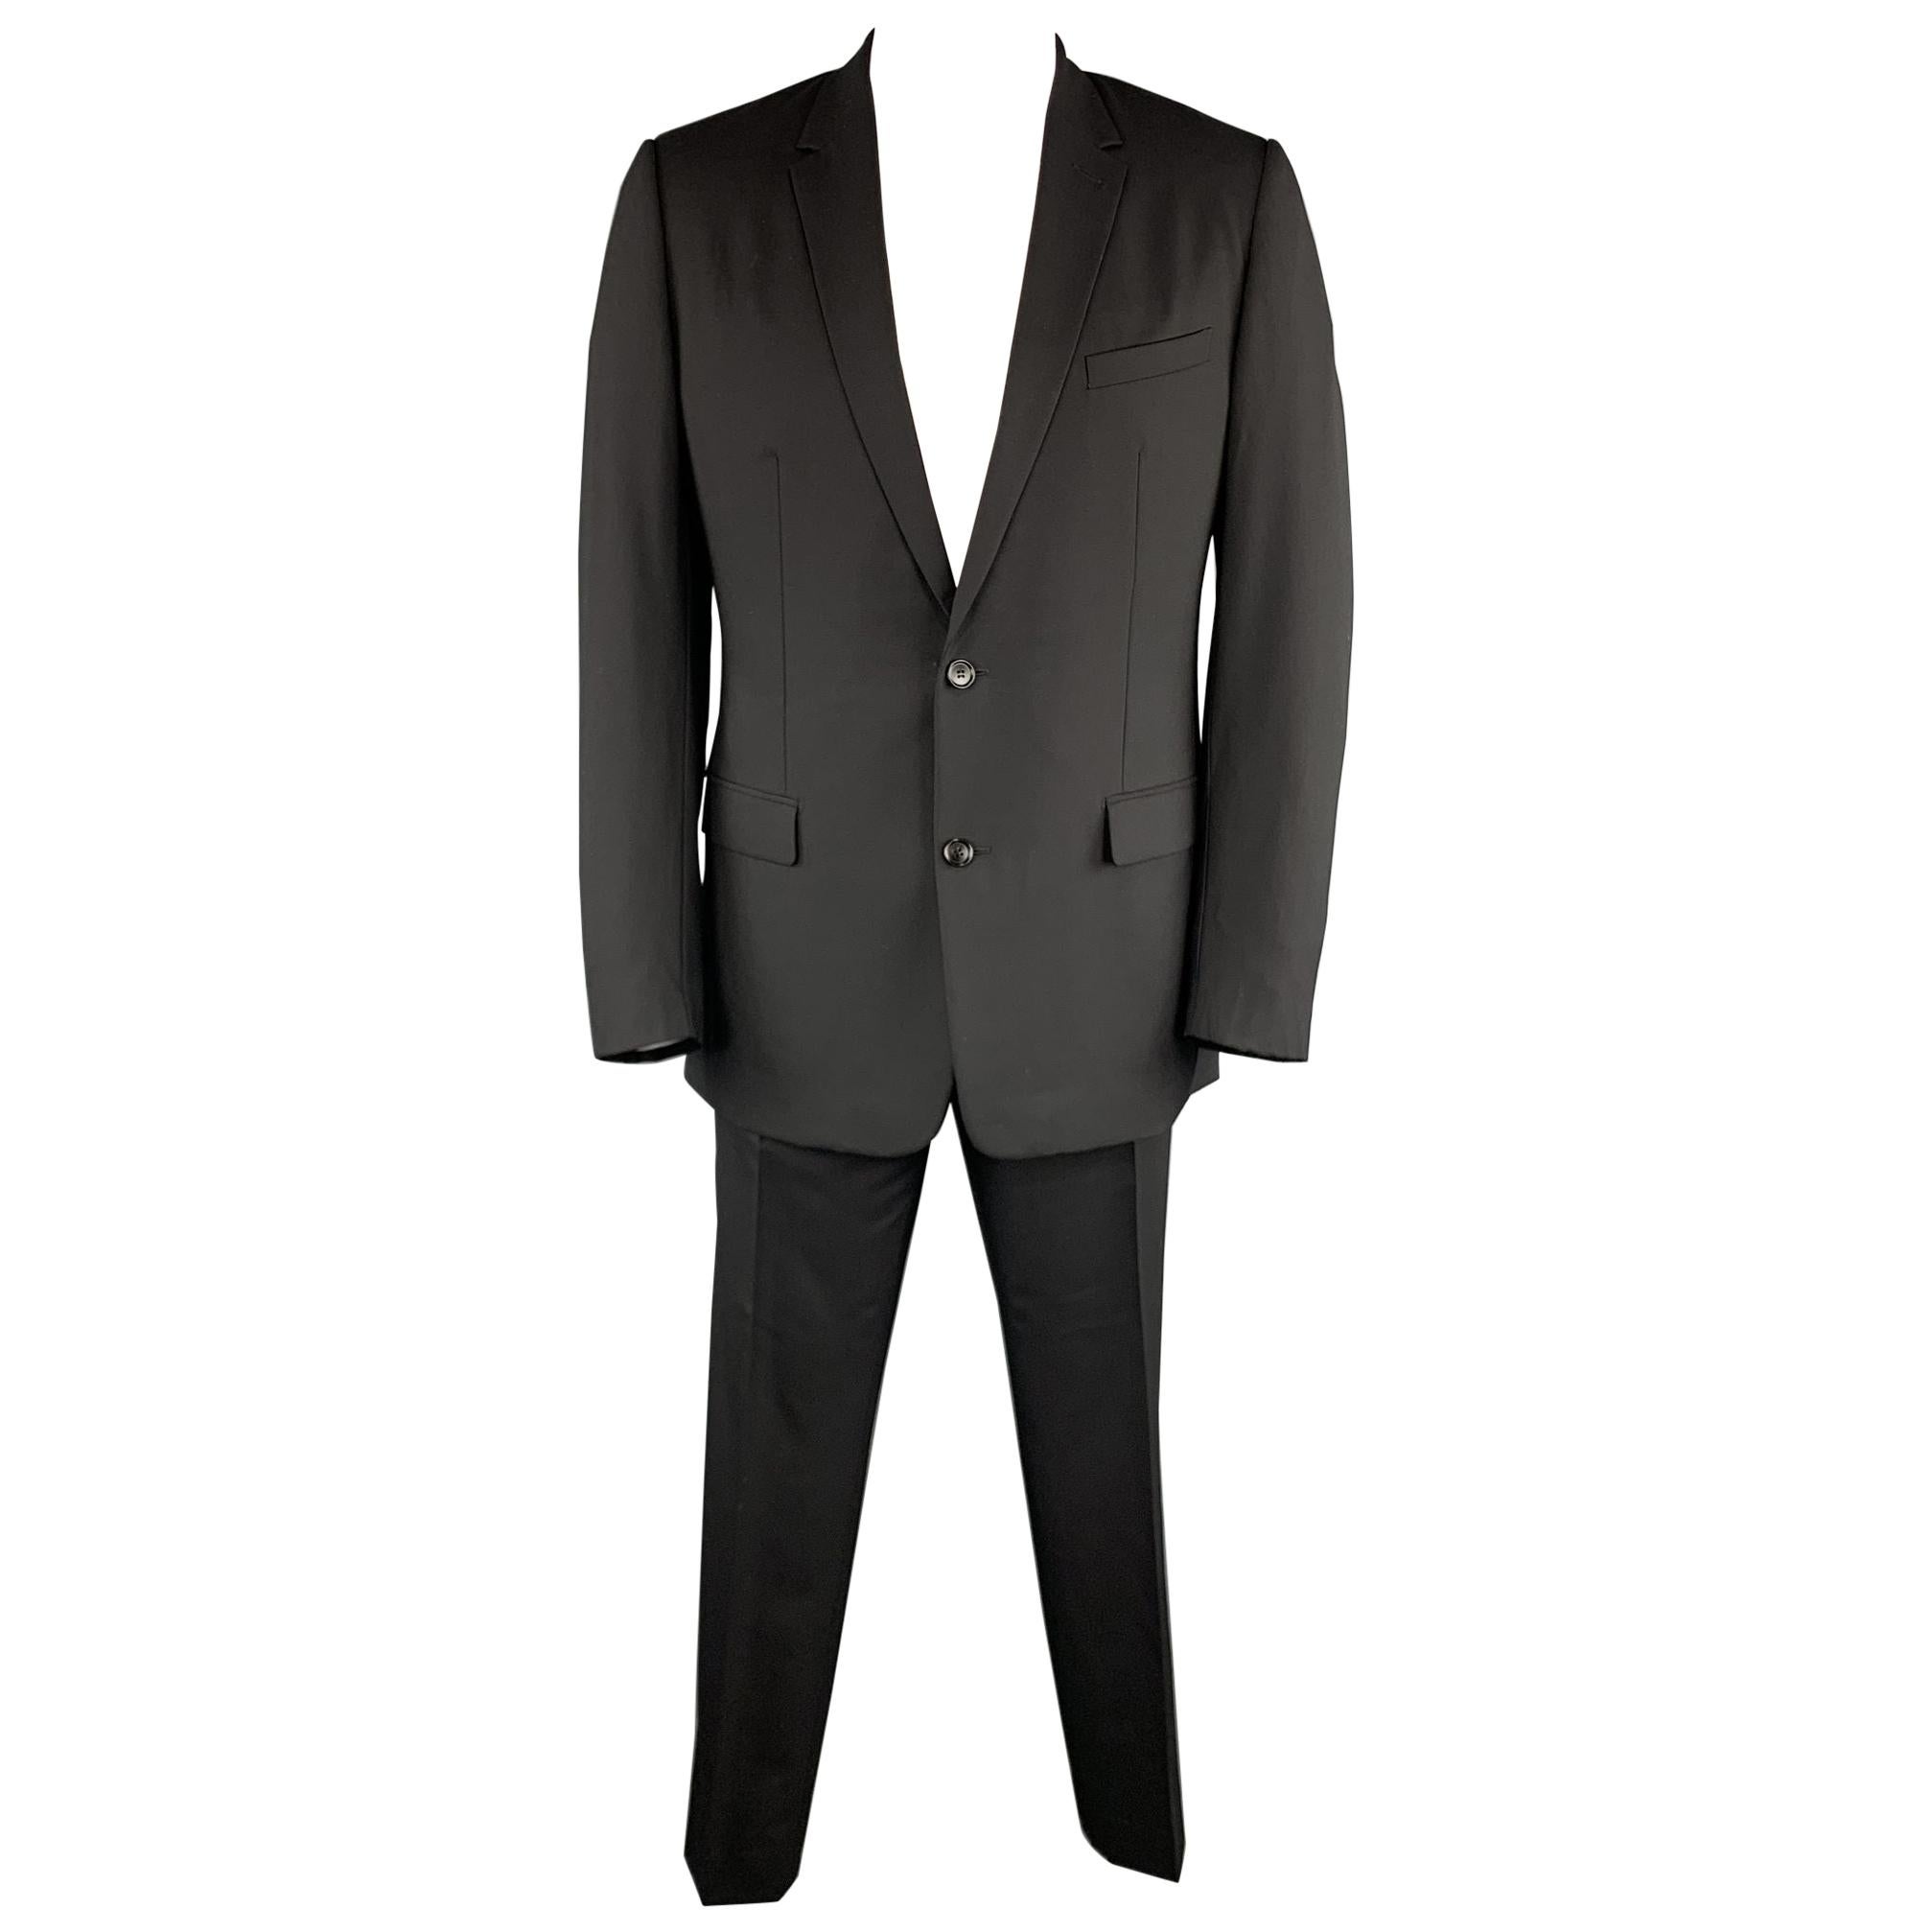 DIOR HOMME Size US 44 / IT 54 R Black Virgin Wool Notch Lapel Two Button Suit